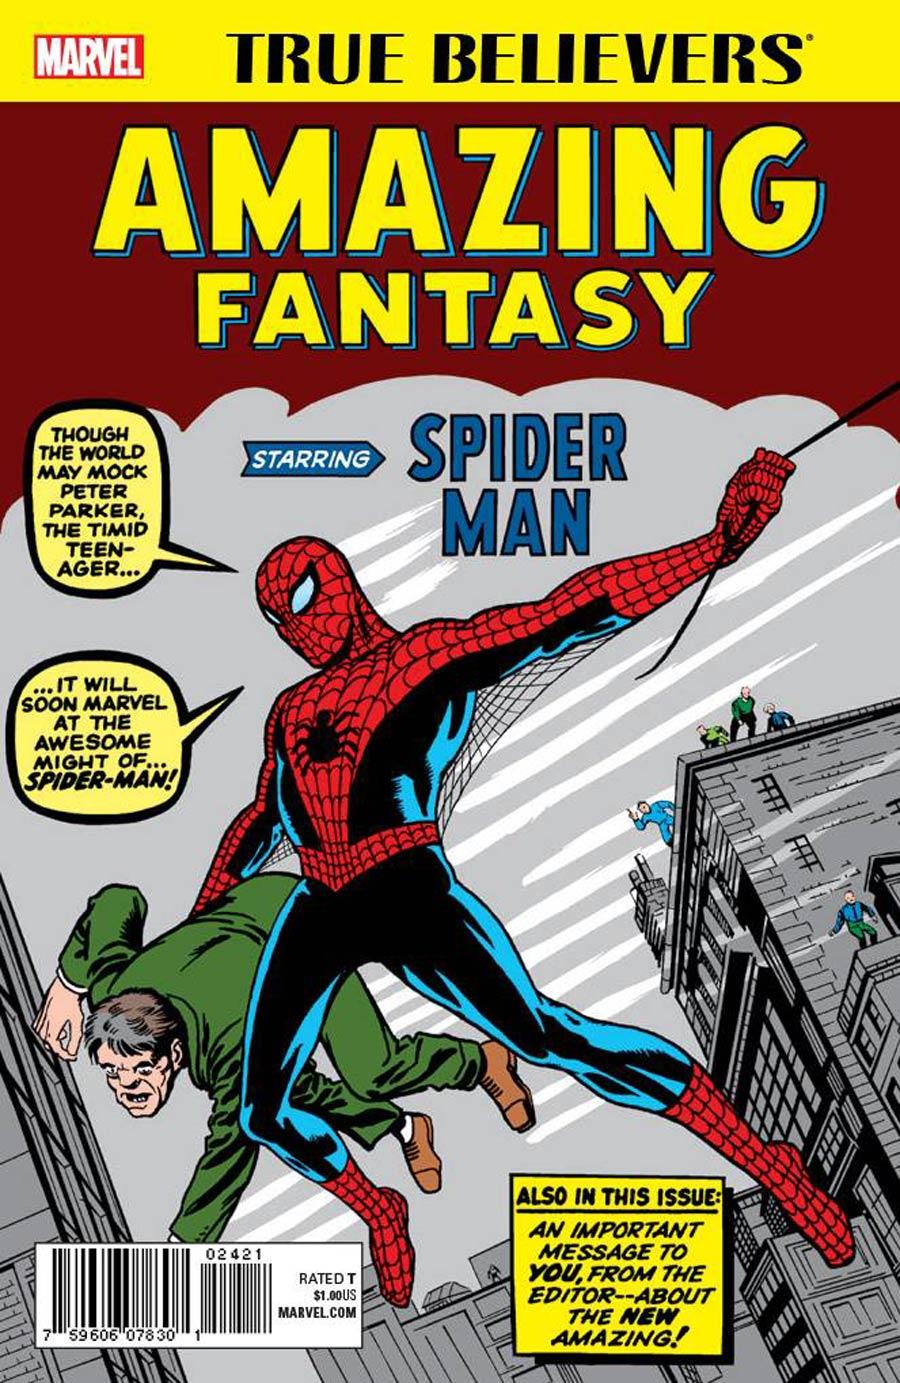 True Believers Amazing Fantasy Starring Spider-Man Vol. 1 #1